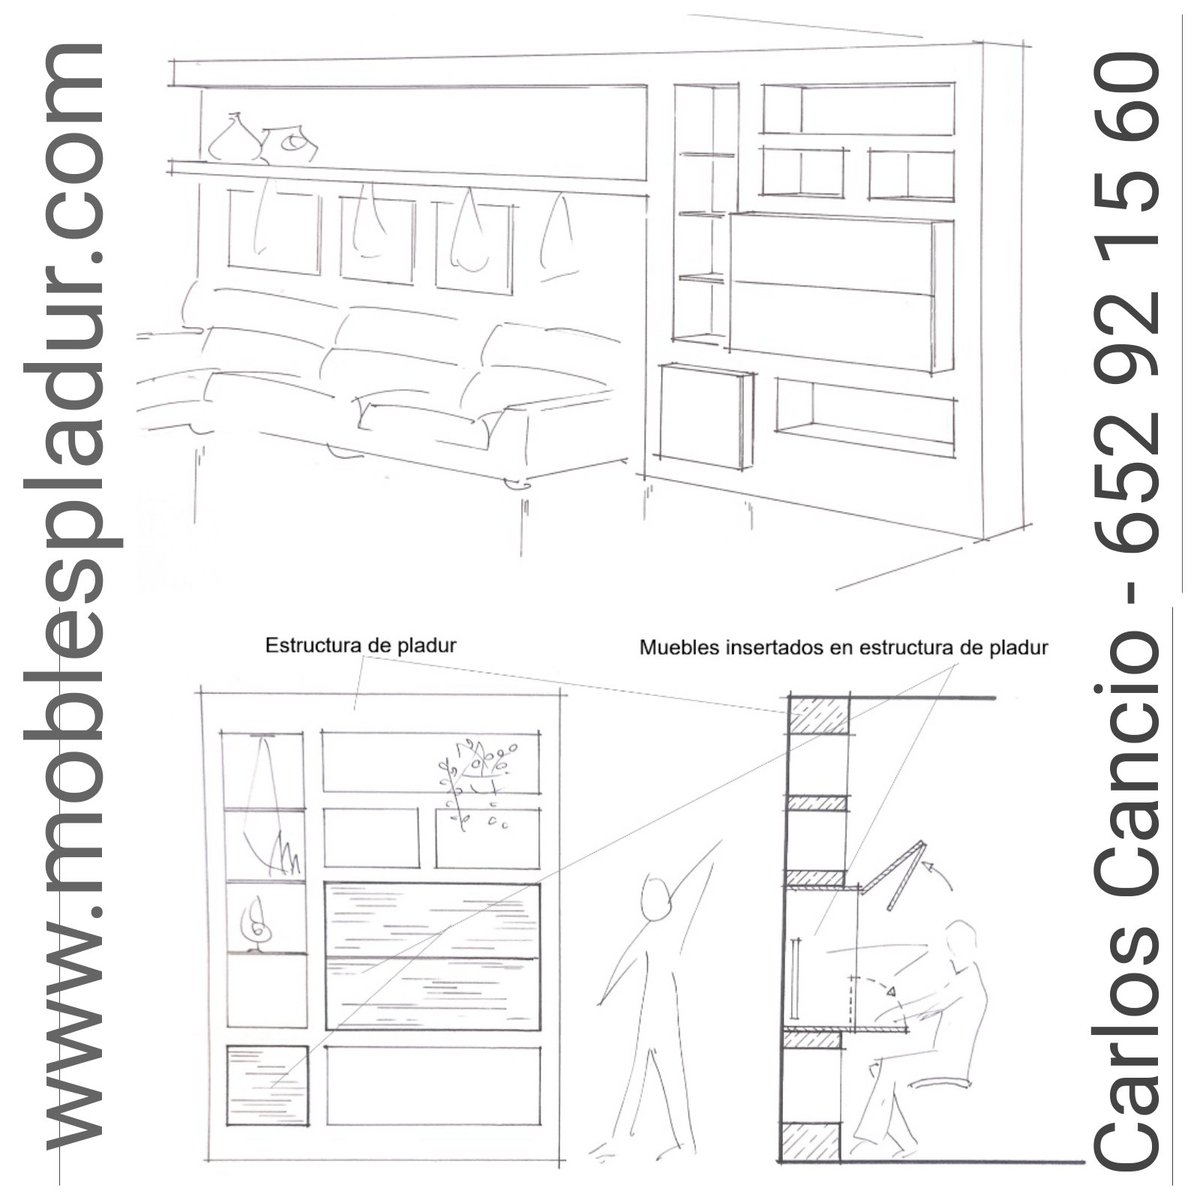 Diseños propios, mueble con estructura de #pladur y escritorio insertado con puertas elevables
#rubicity #rubiciutat #molletdelvalles #igersvalles #chimeneaselectricas